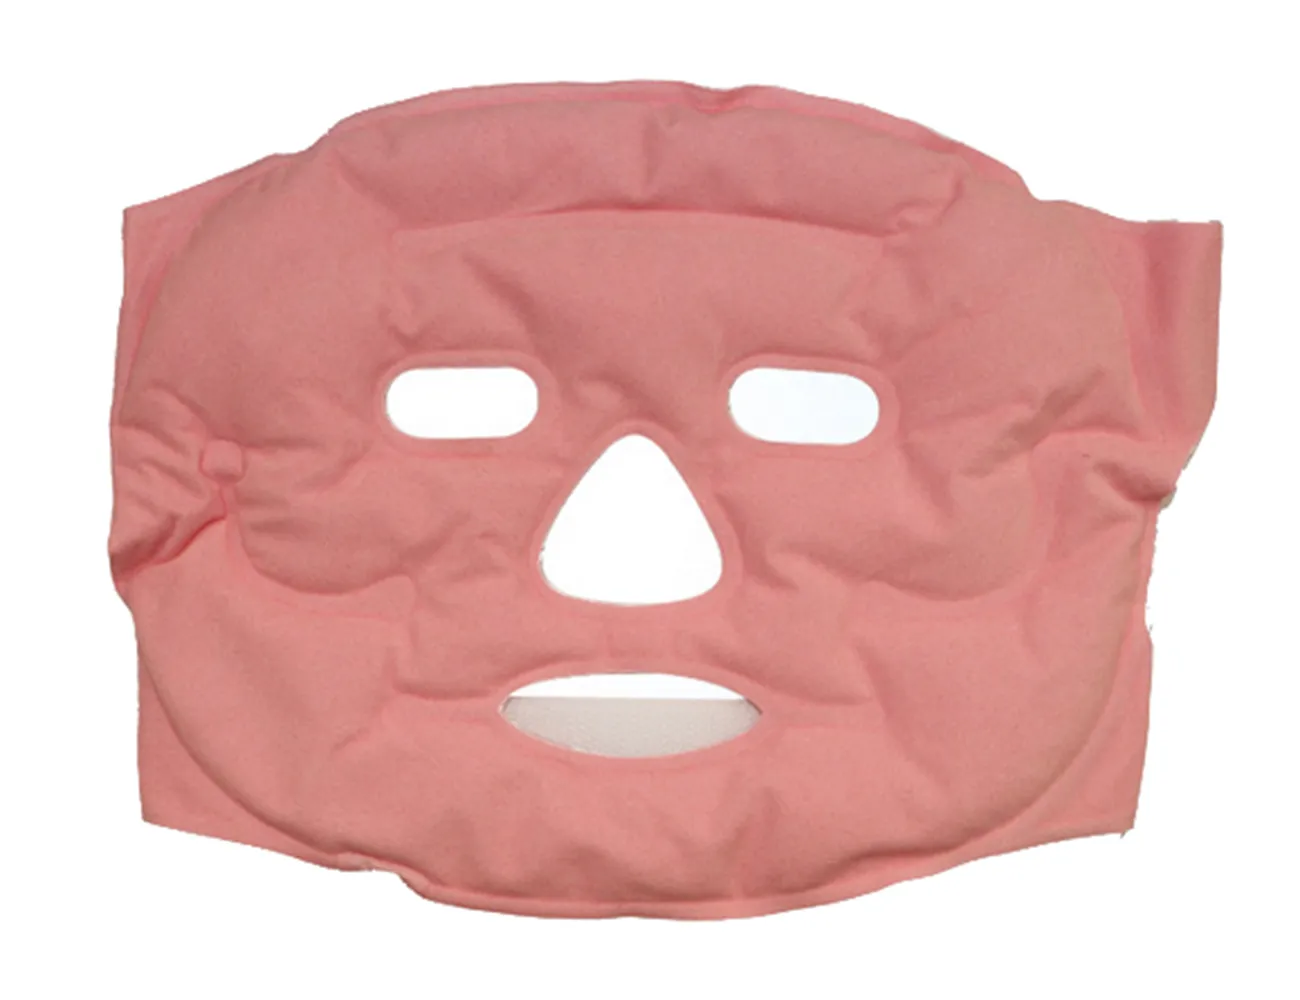 Facial Mask Face Massager Whitening Mask Skin Care Tourmaline Beauty Mask Magnetic Massage Radiation Protection Elitzia ETSK55